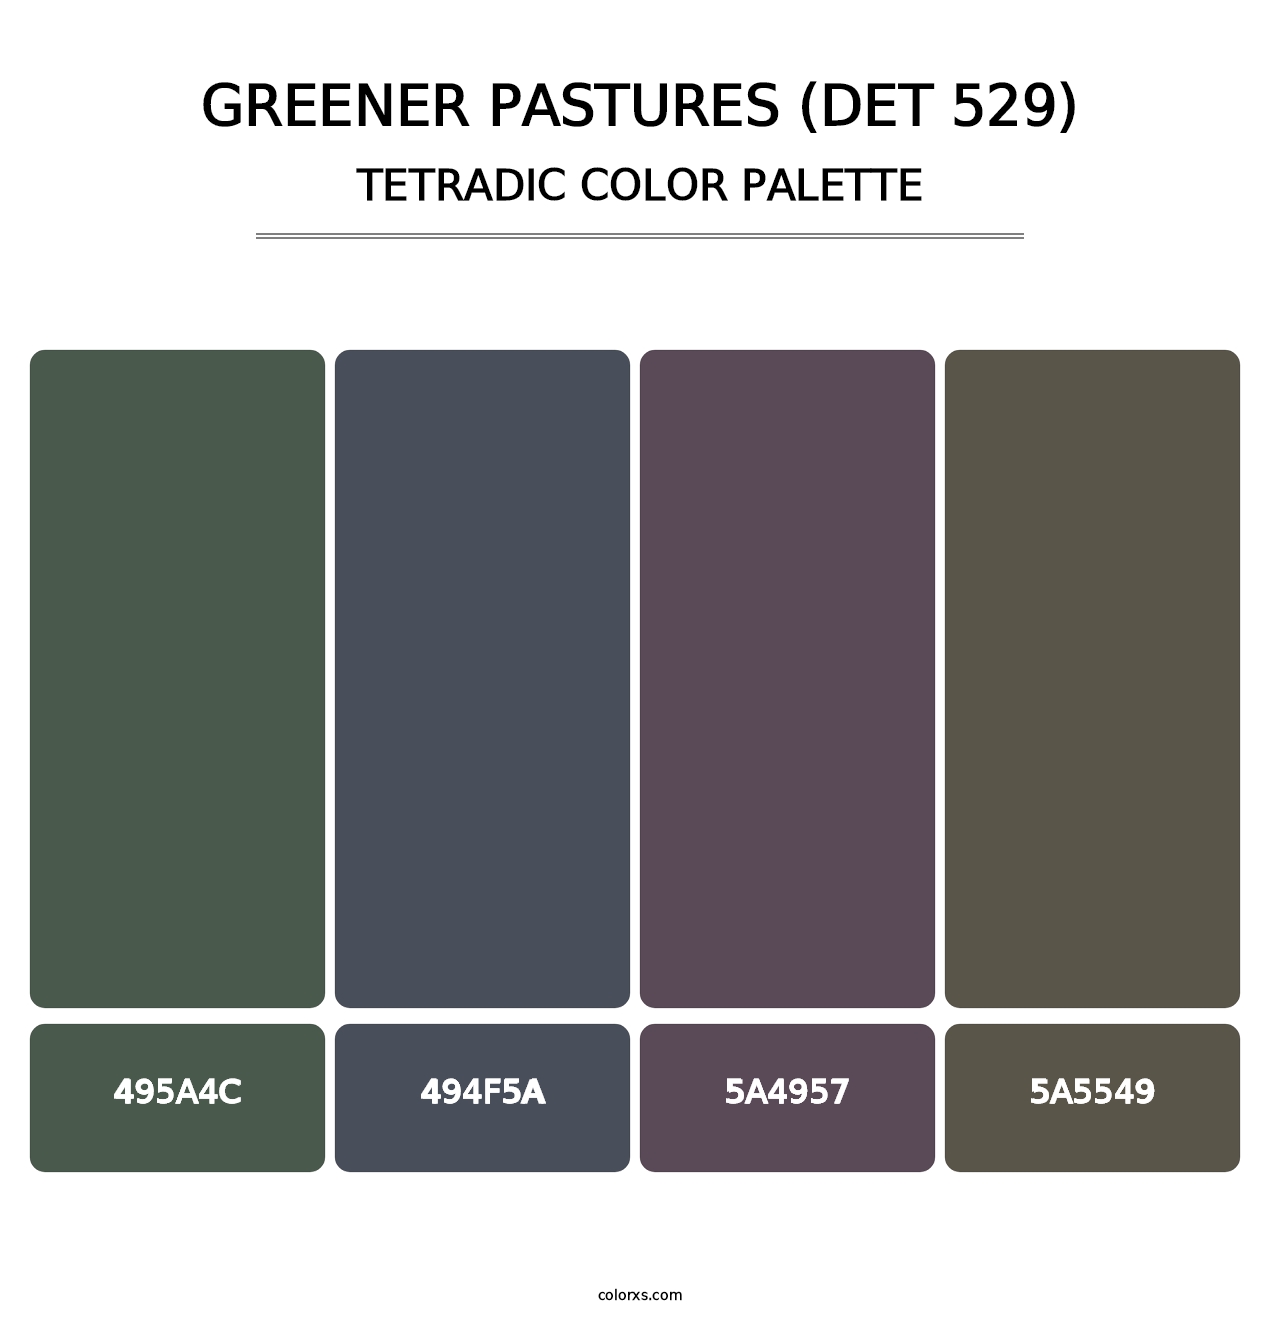 Greener Pastures (DET 529) - Tetradic Color Palette